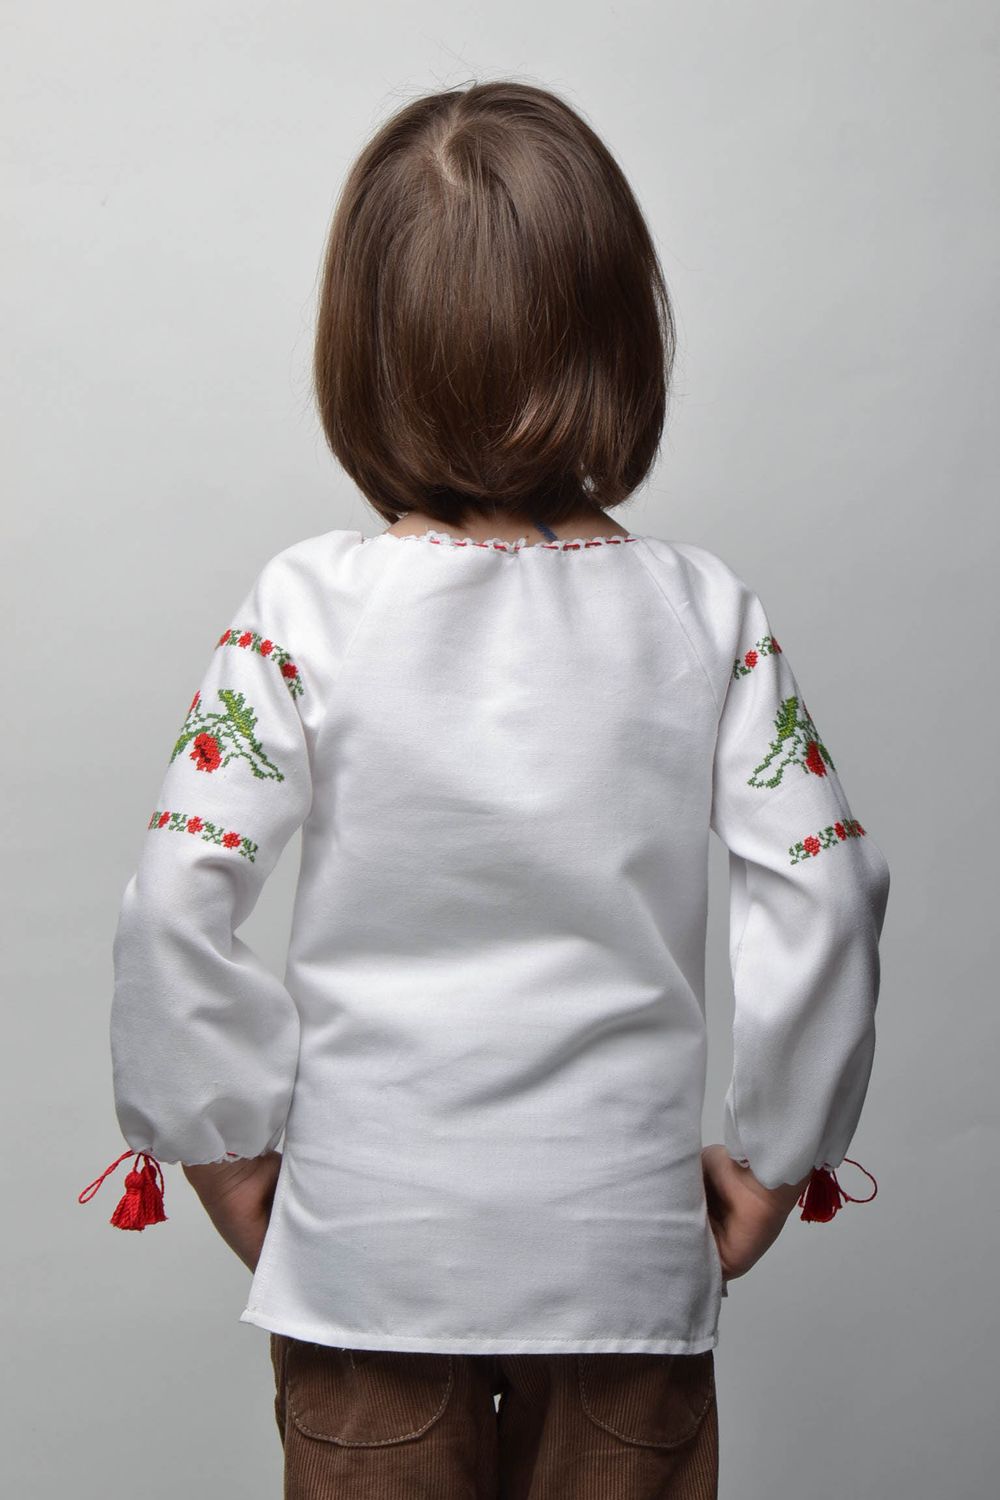 Camisa bordada para una niña de 5-7 años foto 4